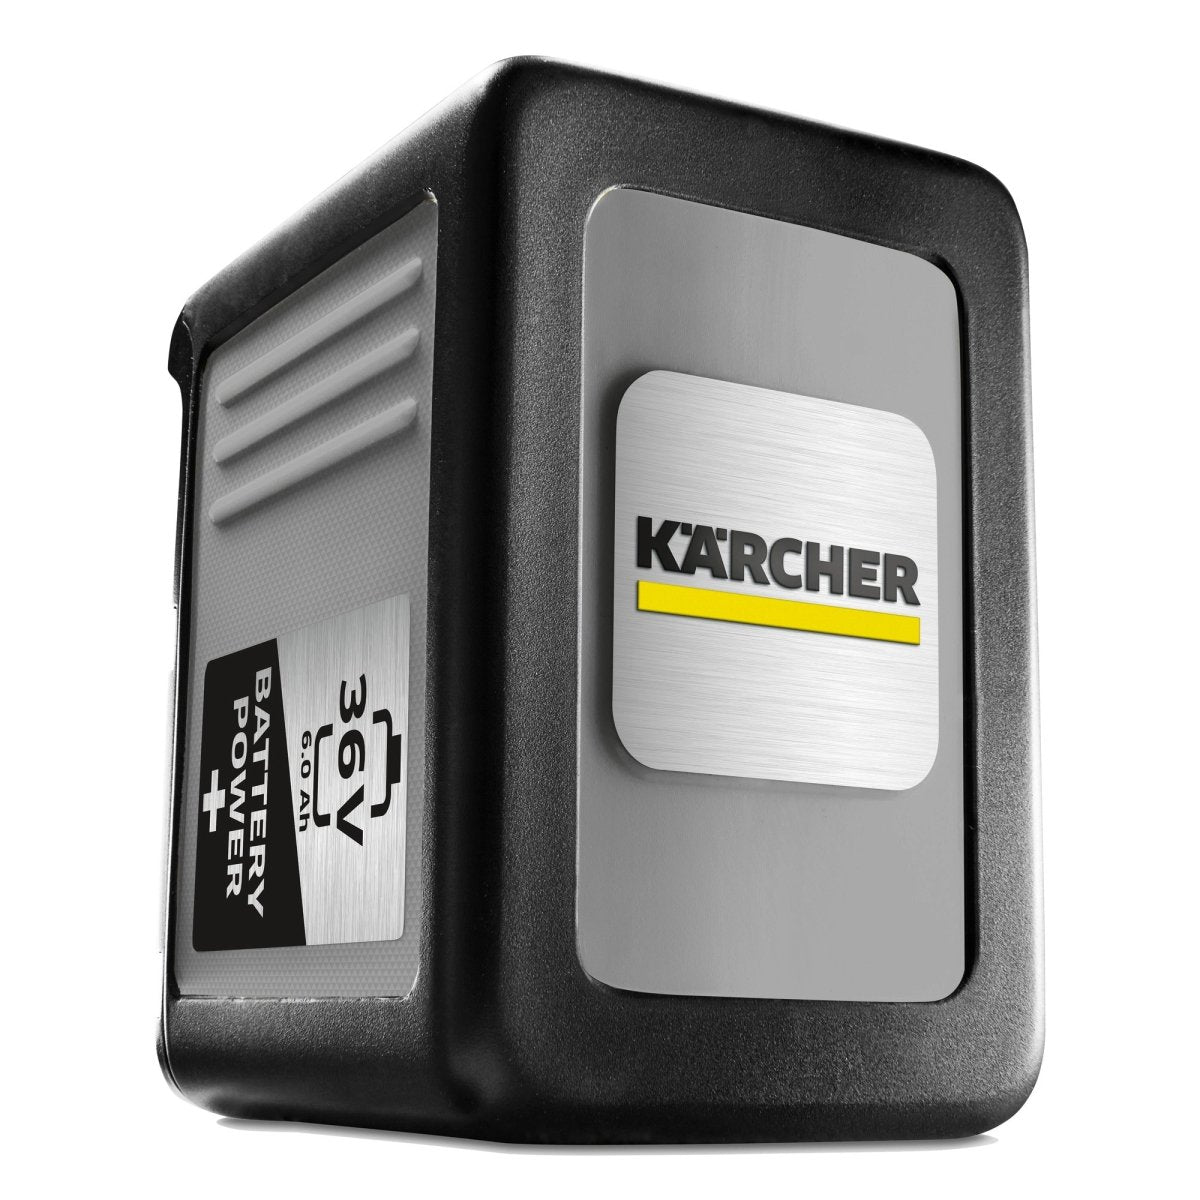 Lava Aspiradora Karcher Puzzi 9/1 Bp Pack A Batería 500w Color Gris